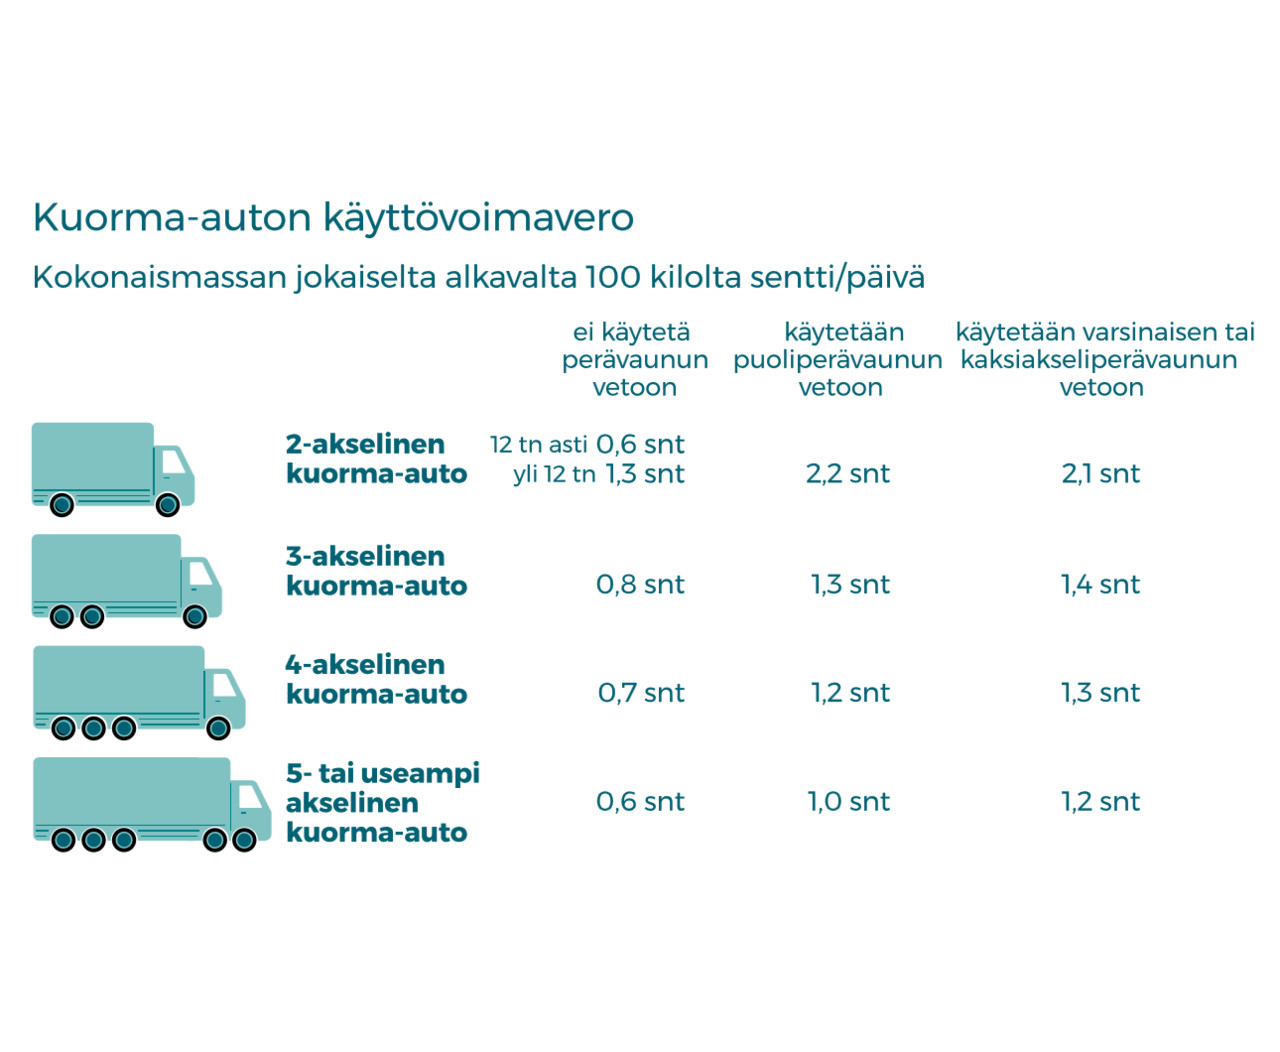 Kuorma-auton käyttövoimaveron muodostuminen. Kuvan sisältö kerrotaan kuvan alla.